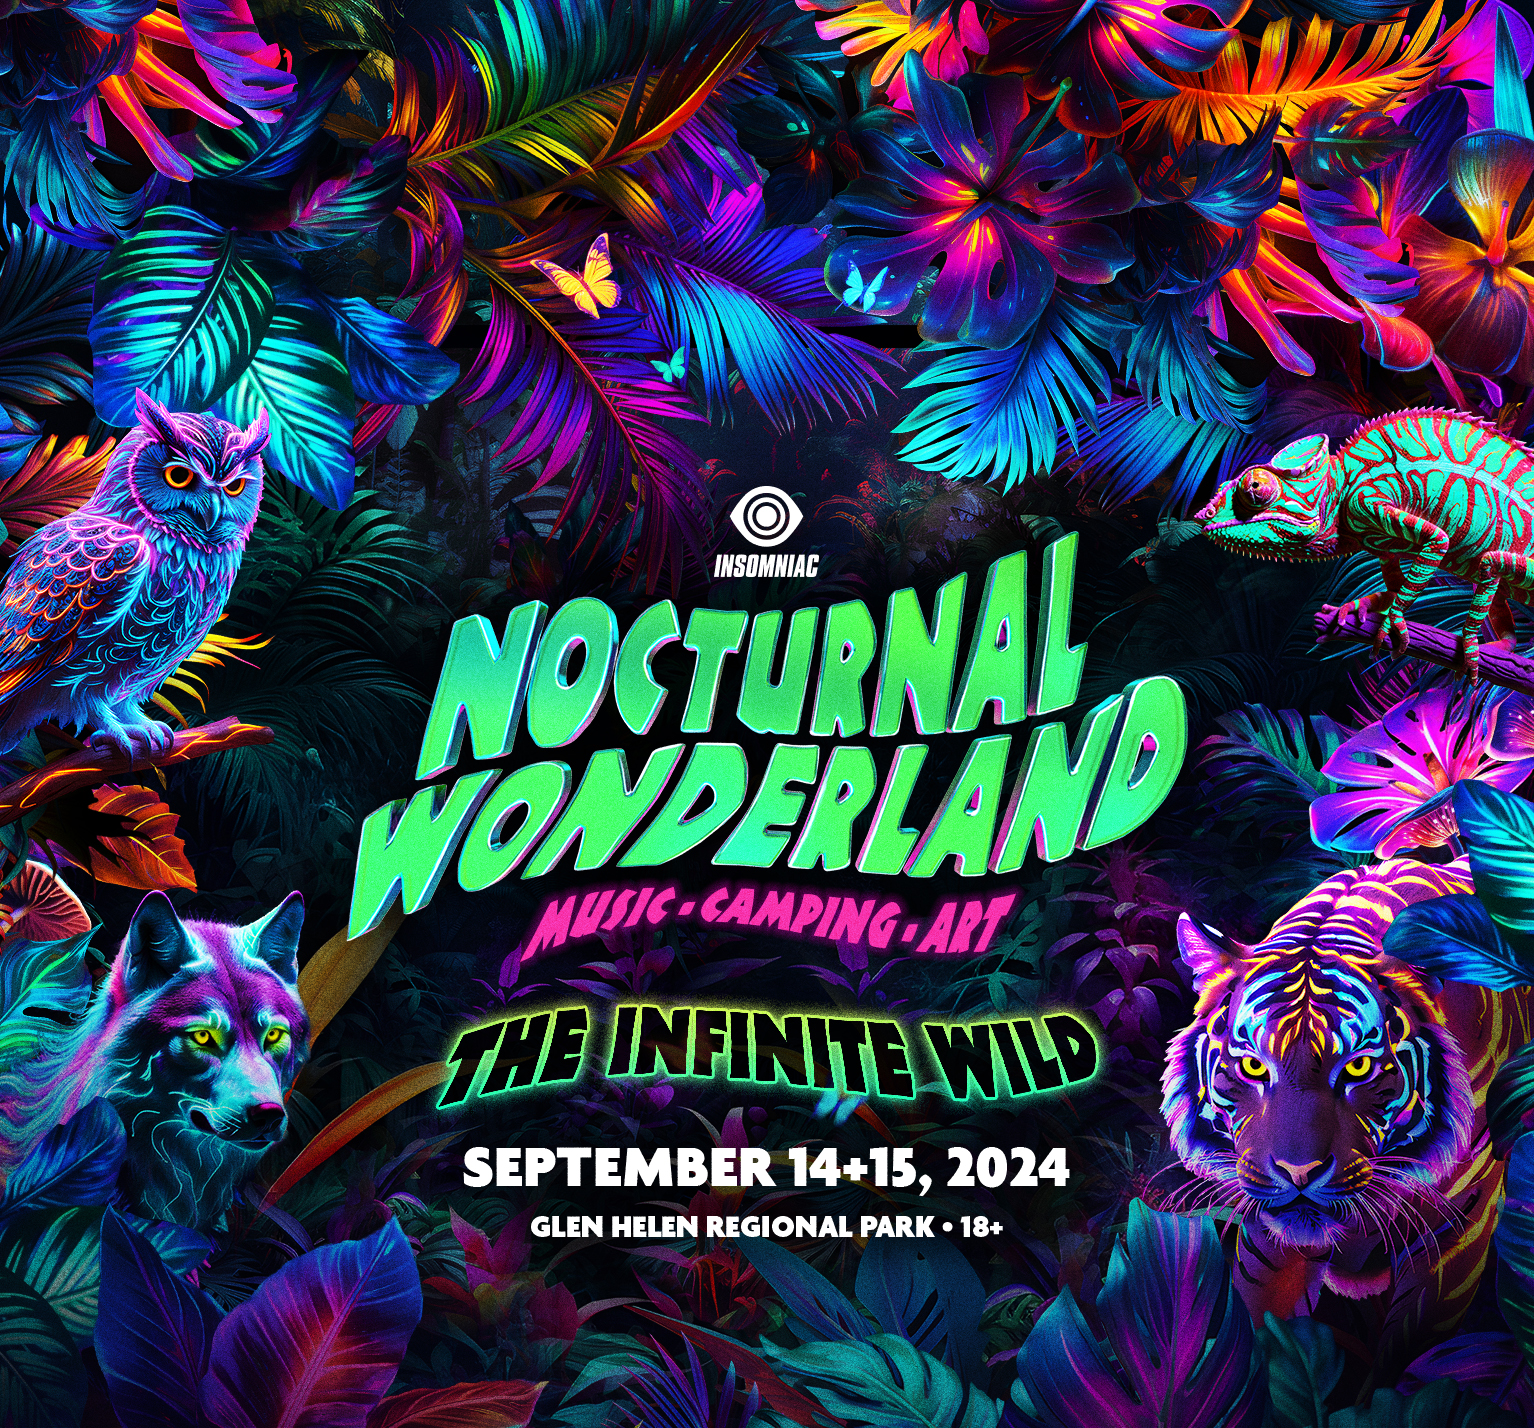 Nocturnal Wonderland, September 14+15, 2024